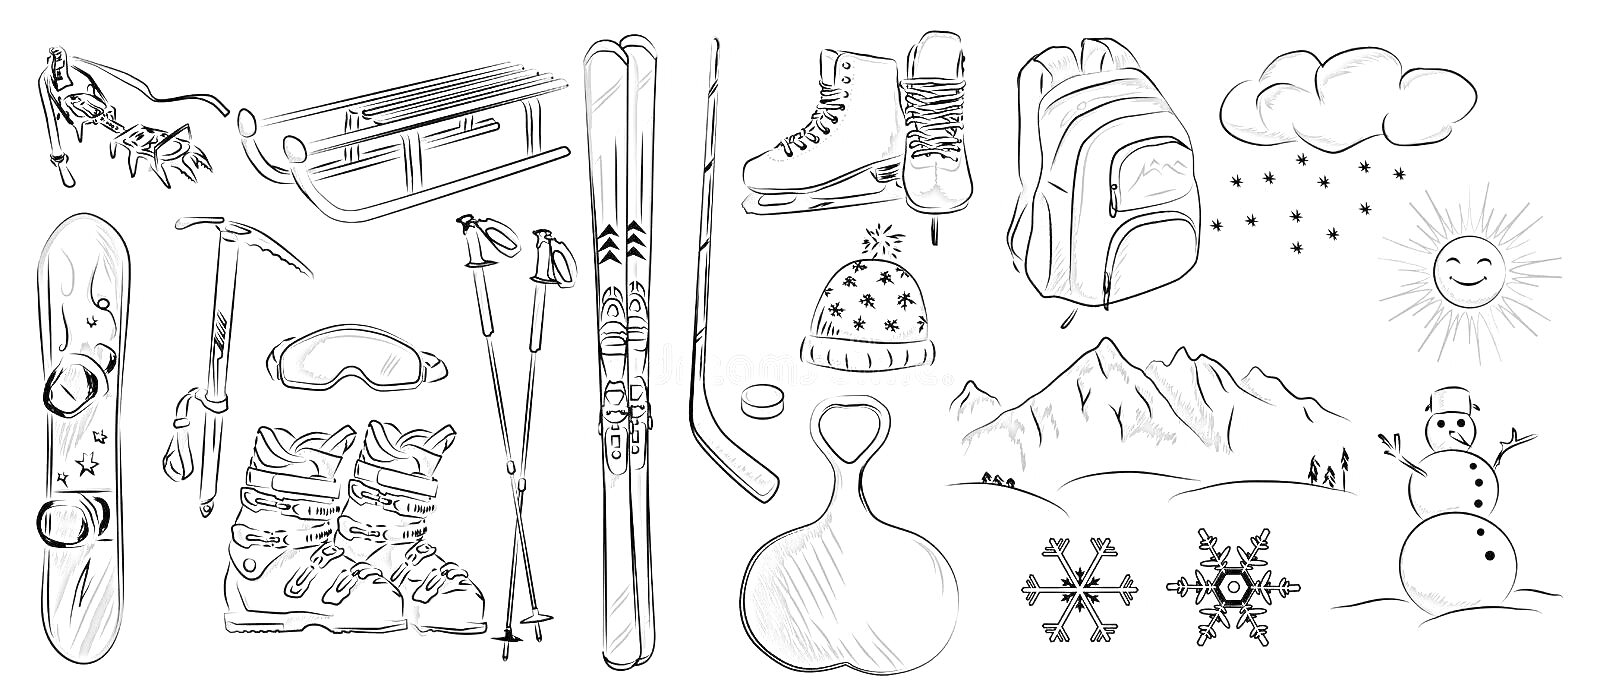 Раскраска Лыжи, коньки, санки, палки для лыж, сноуборд, валенки, шапка, горы, солнце, снеговик, рюкзаки, снежинки, снежное облако, ледянка, маска для катания на лыжах.